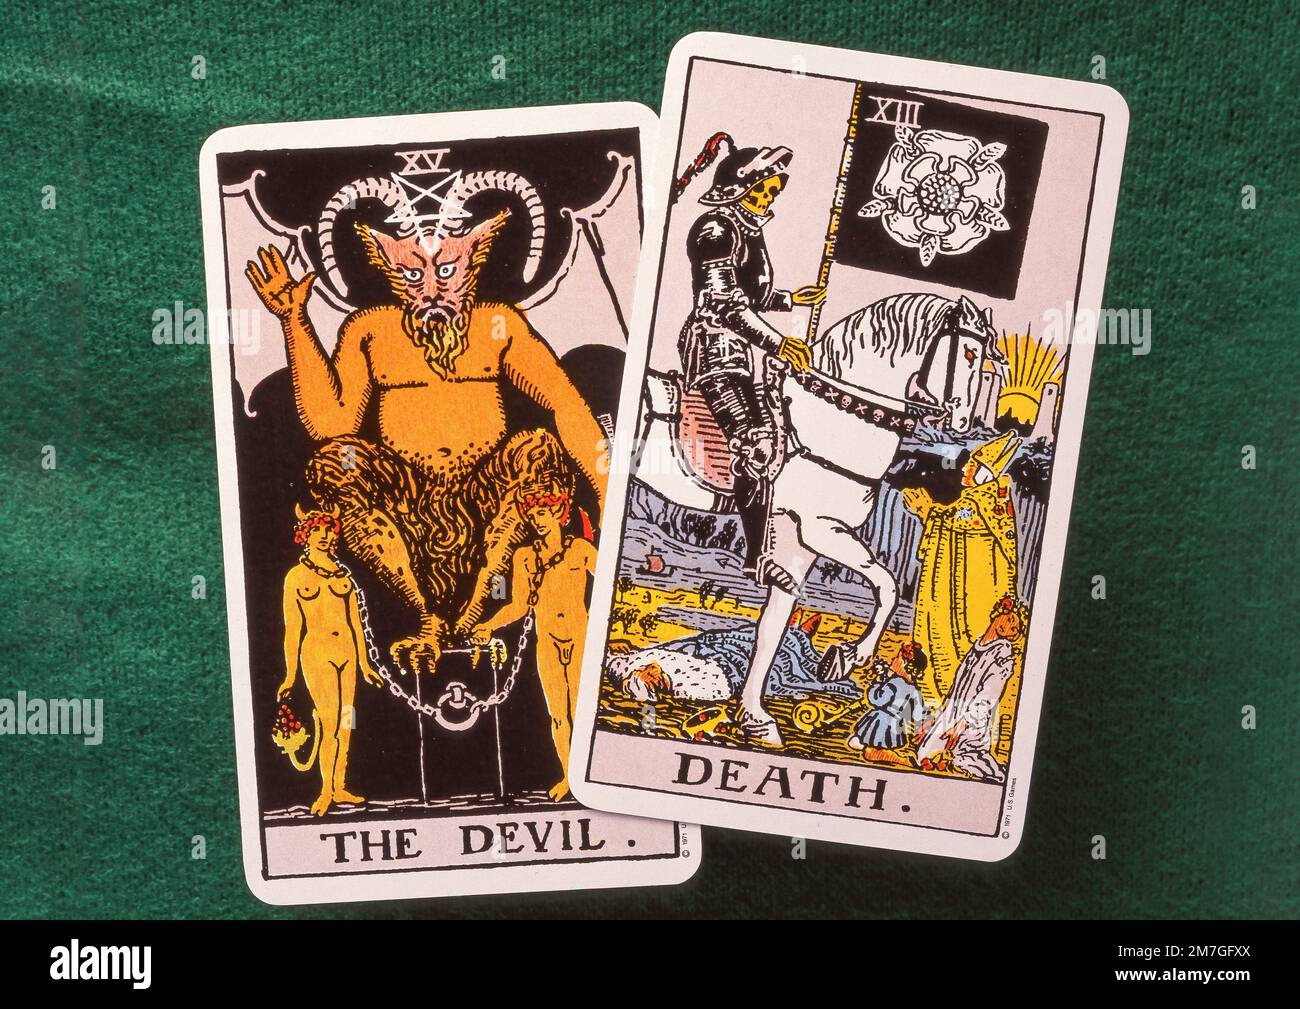 The Devil and Death Major Arcana Tarot cards on felt card table, Greater London, England, United Kingdom Stock Photo